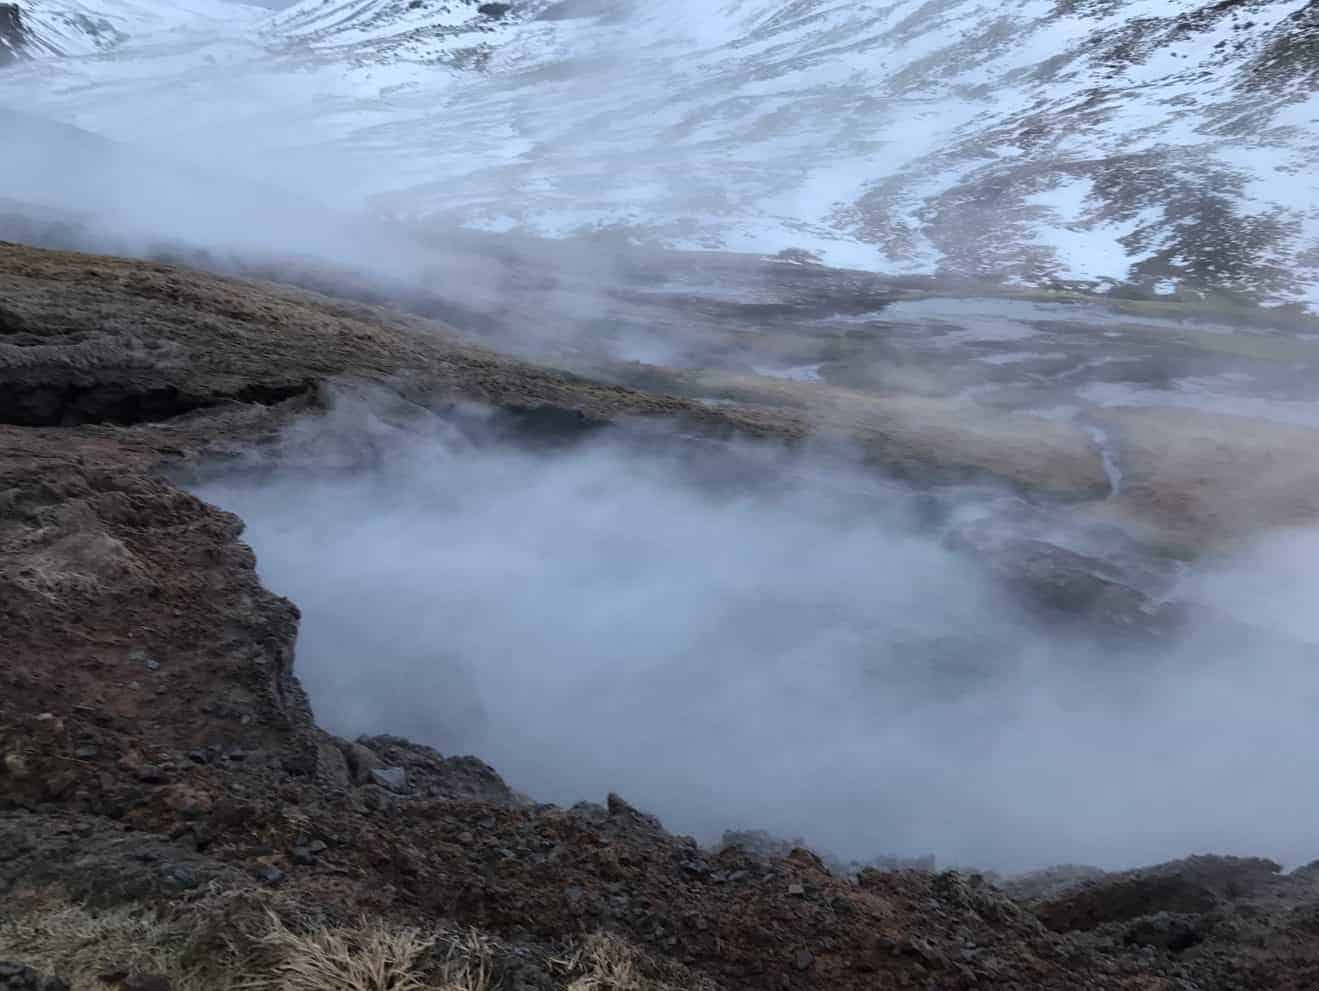 The hot spring in Reykjadalur above Hveragerði